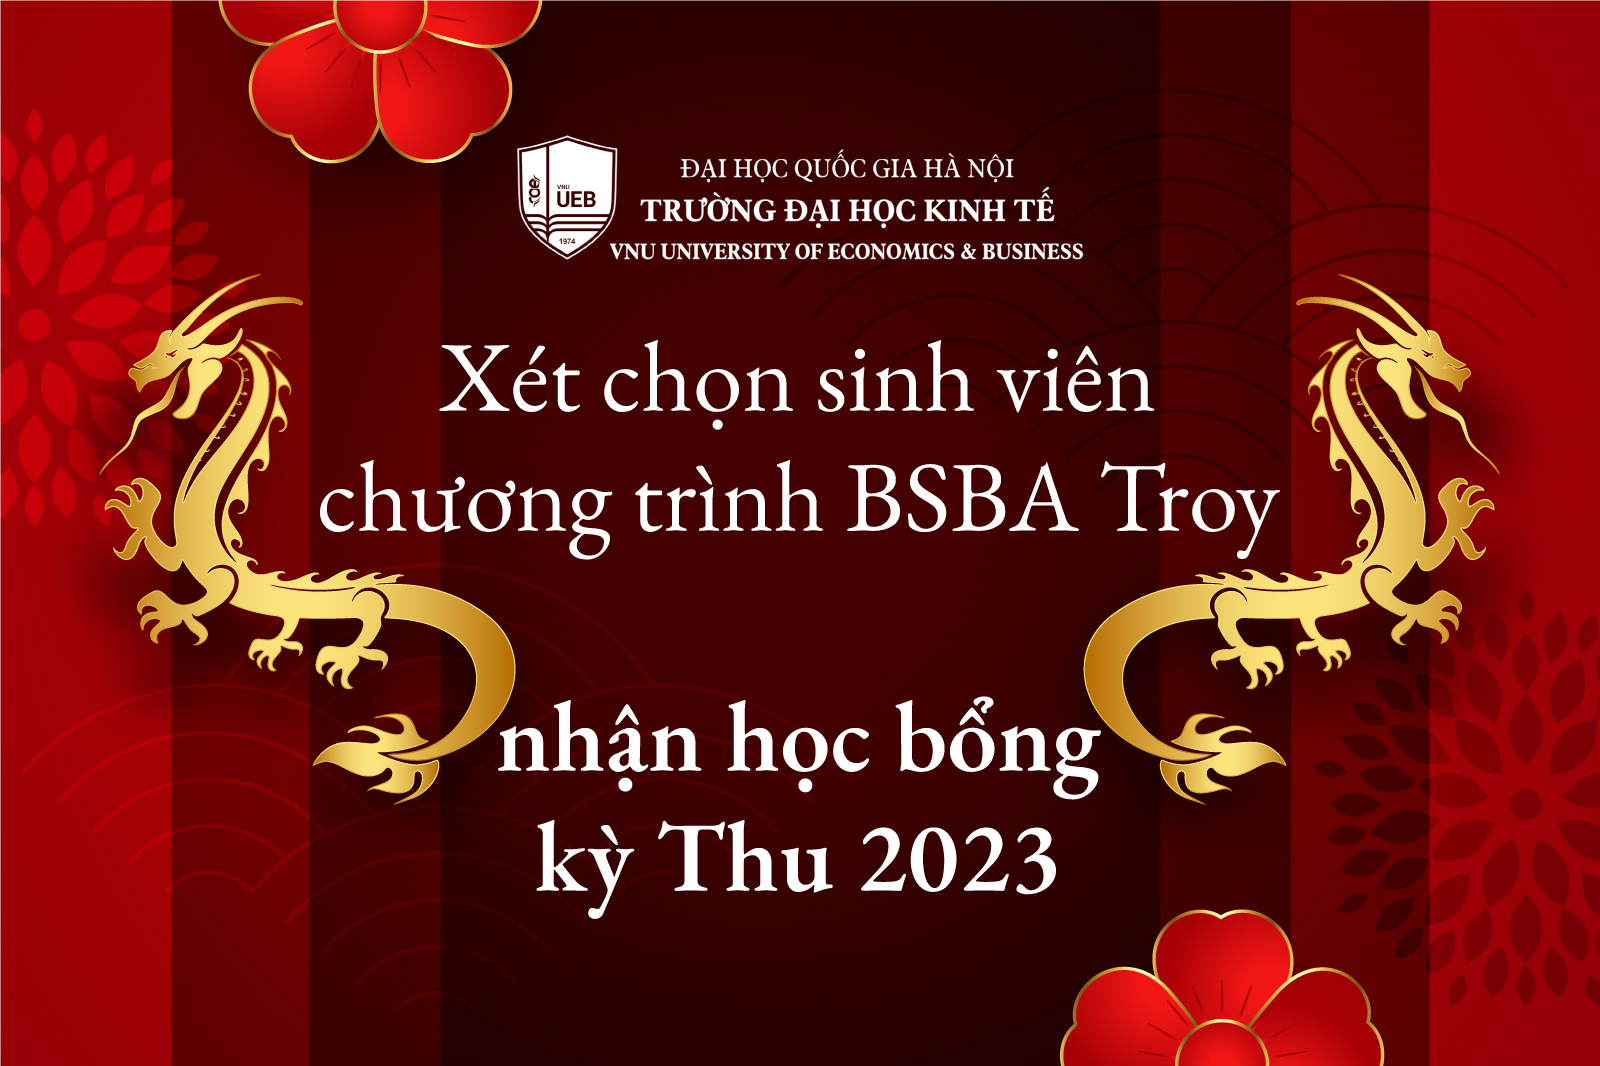 Xét chọn sinh viên hệ liên kết quốc tế chương trình BSBA Troy nhận học bổng kỳ Thu 2023